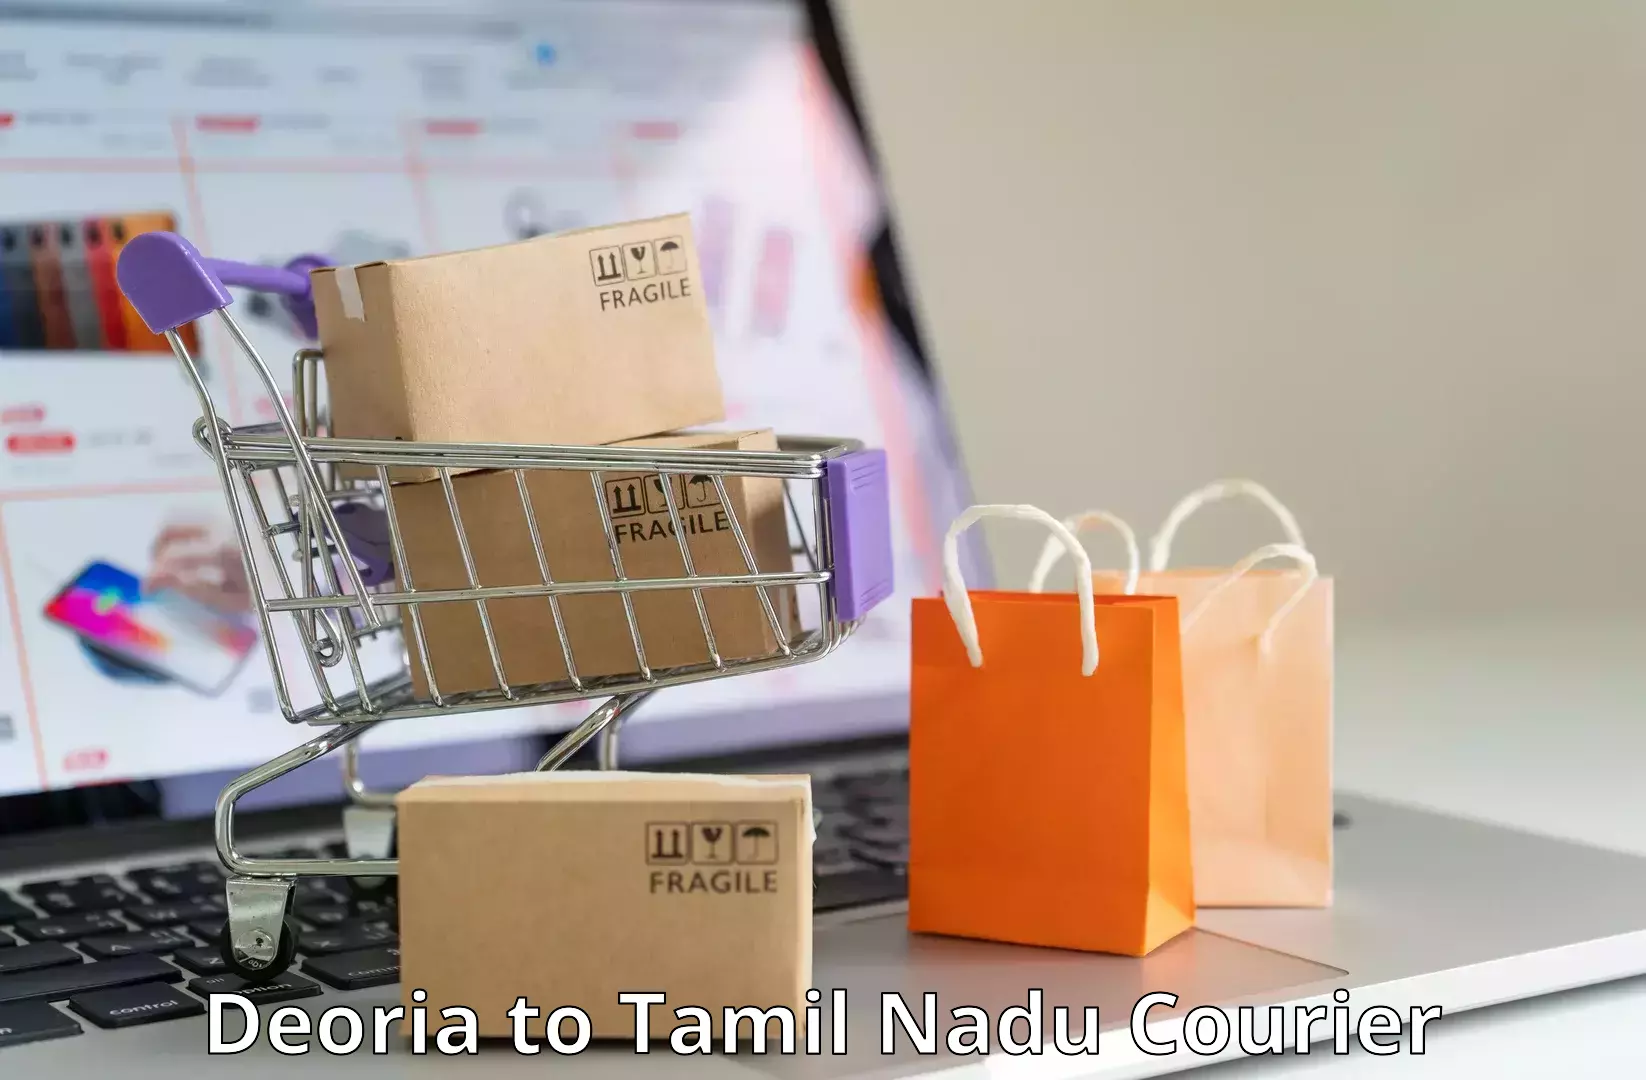 Premium courier solutions Deoria to Pattukkottai